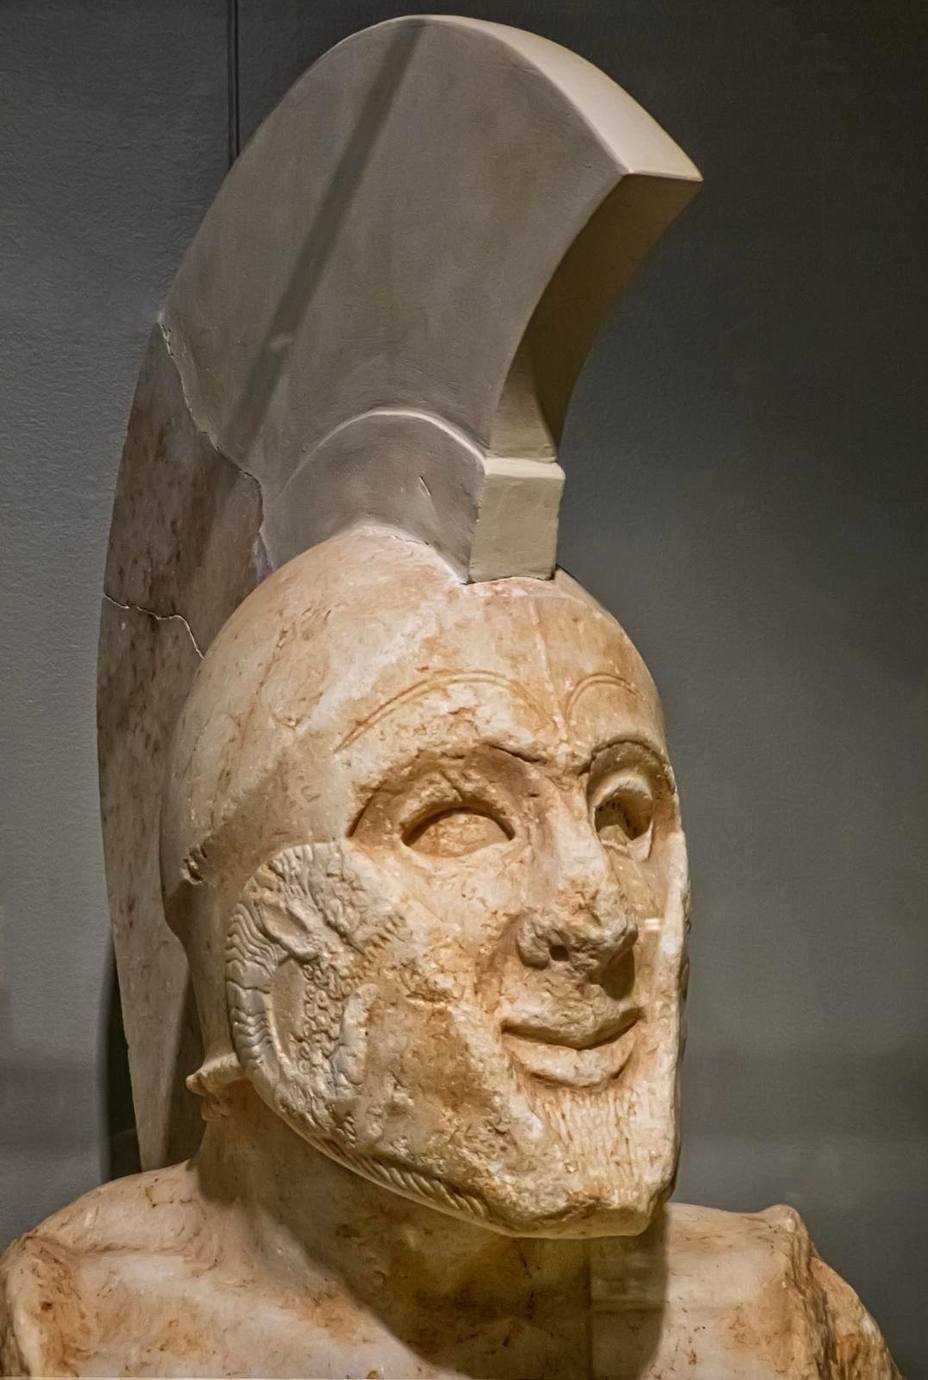 ​Голова мраморной статуи, найденной в 1925 году на акрополе Спарты. Воин изображён в героической наготе, для большей выразительности глаза статуи были изготовлены из стекла. Не без оснований статую считают изображением Леонида, в честь которого на акрополе спартанцами был воздвигнут монументальный комплекс - Леонид, царь Спарты 